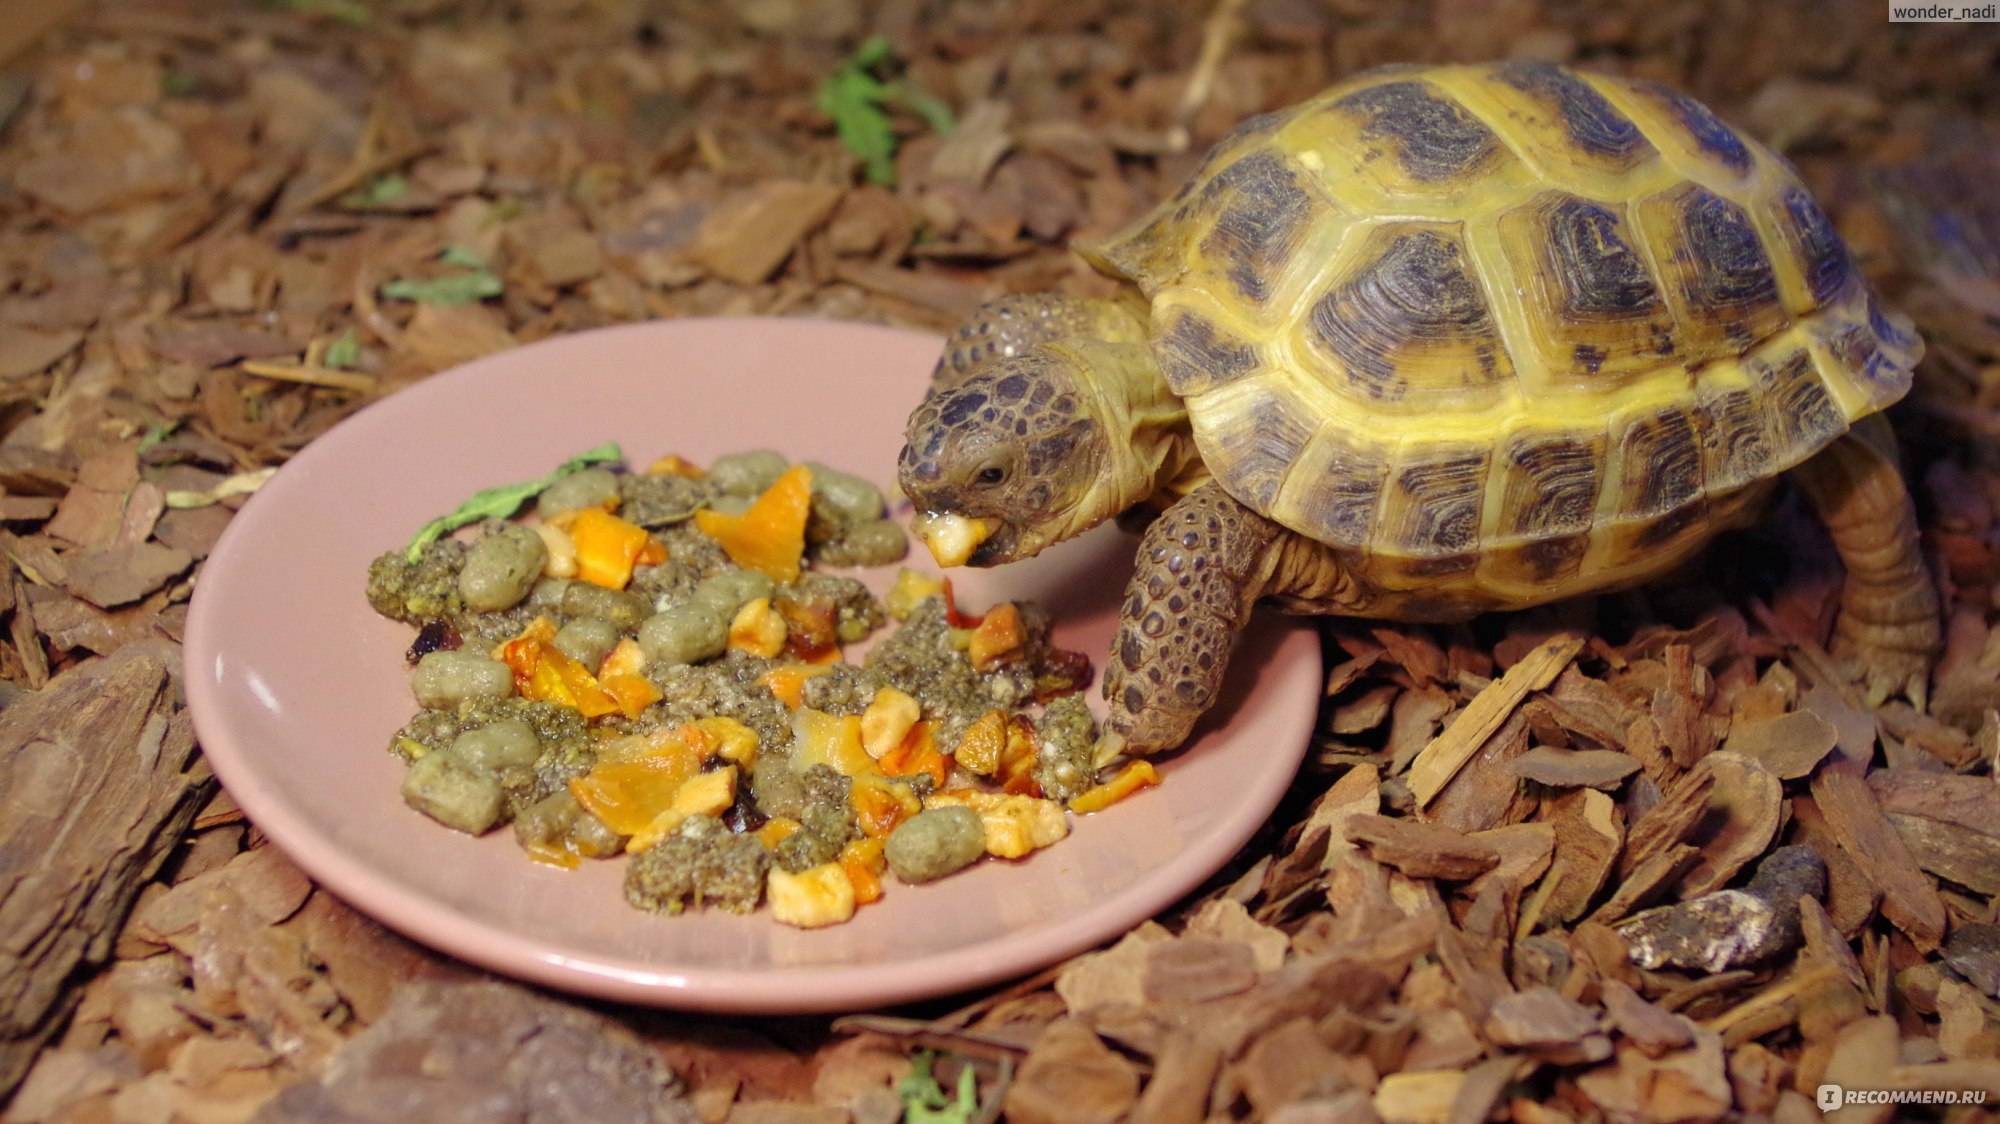 Как ухаживать за черепахой: что нужно для ее содержания в домашних условиях